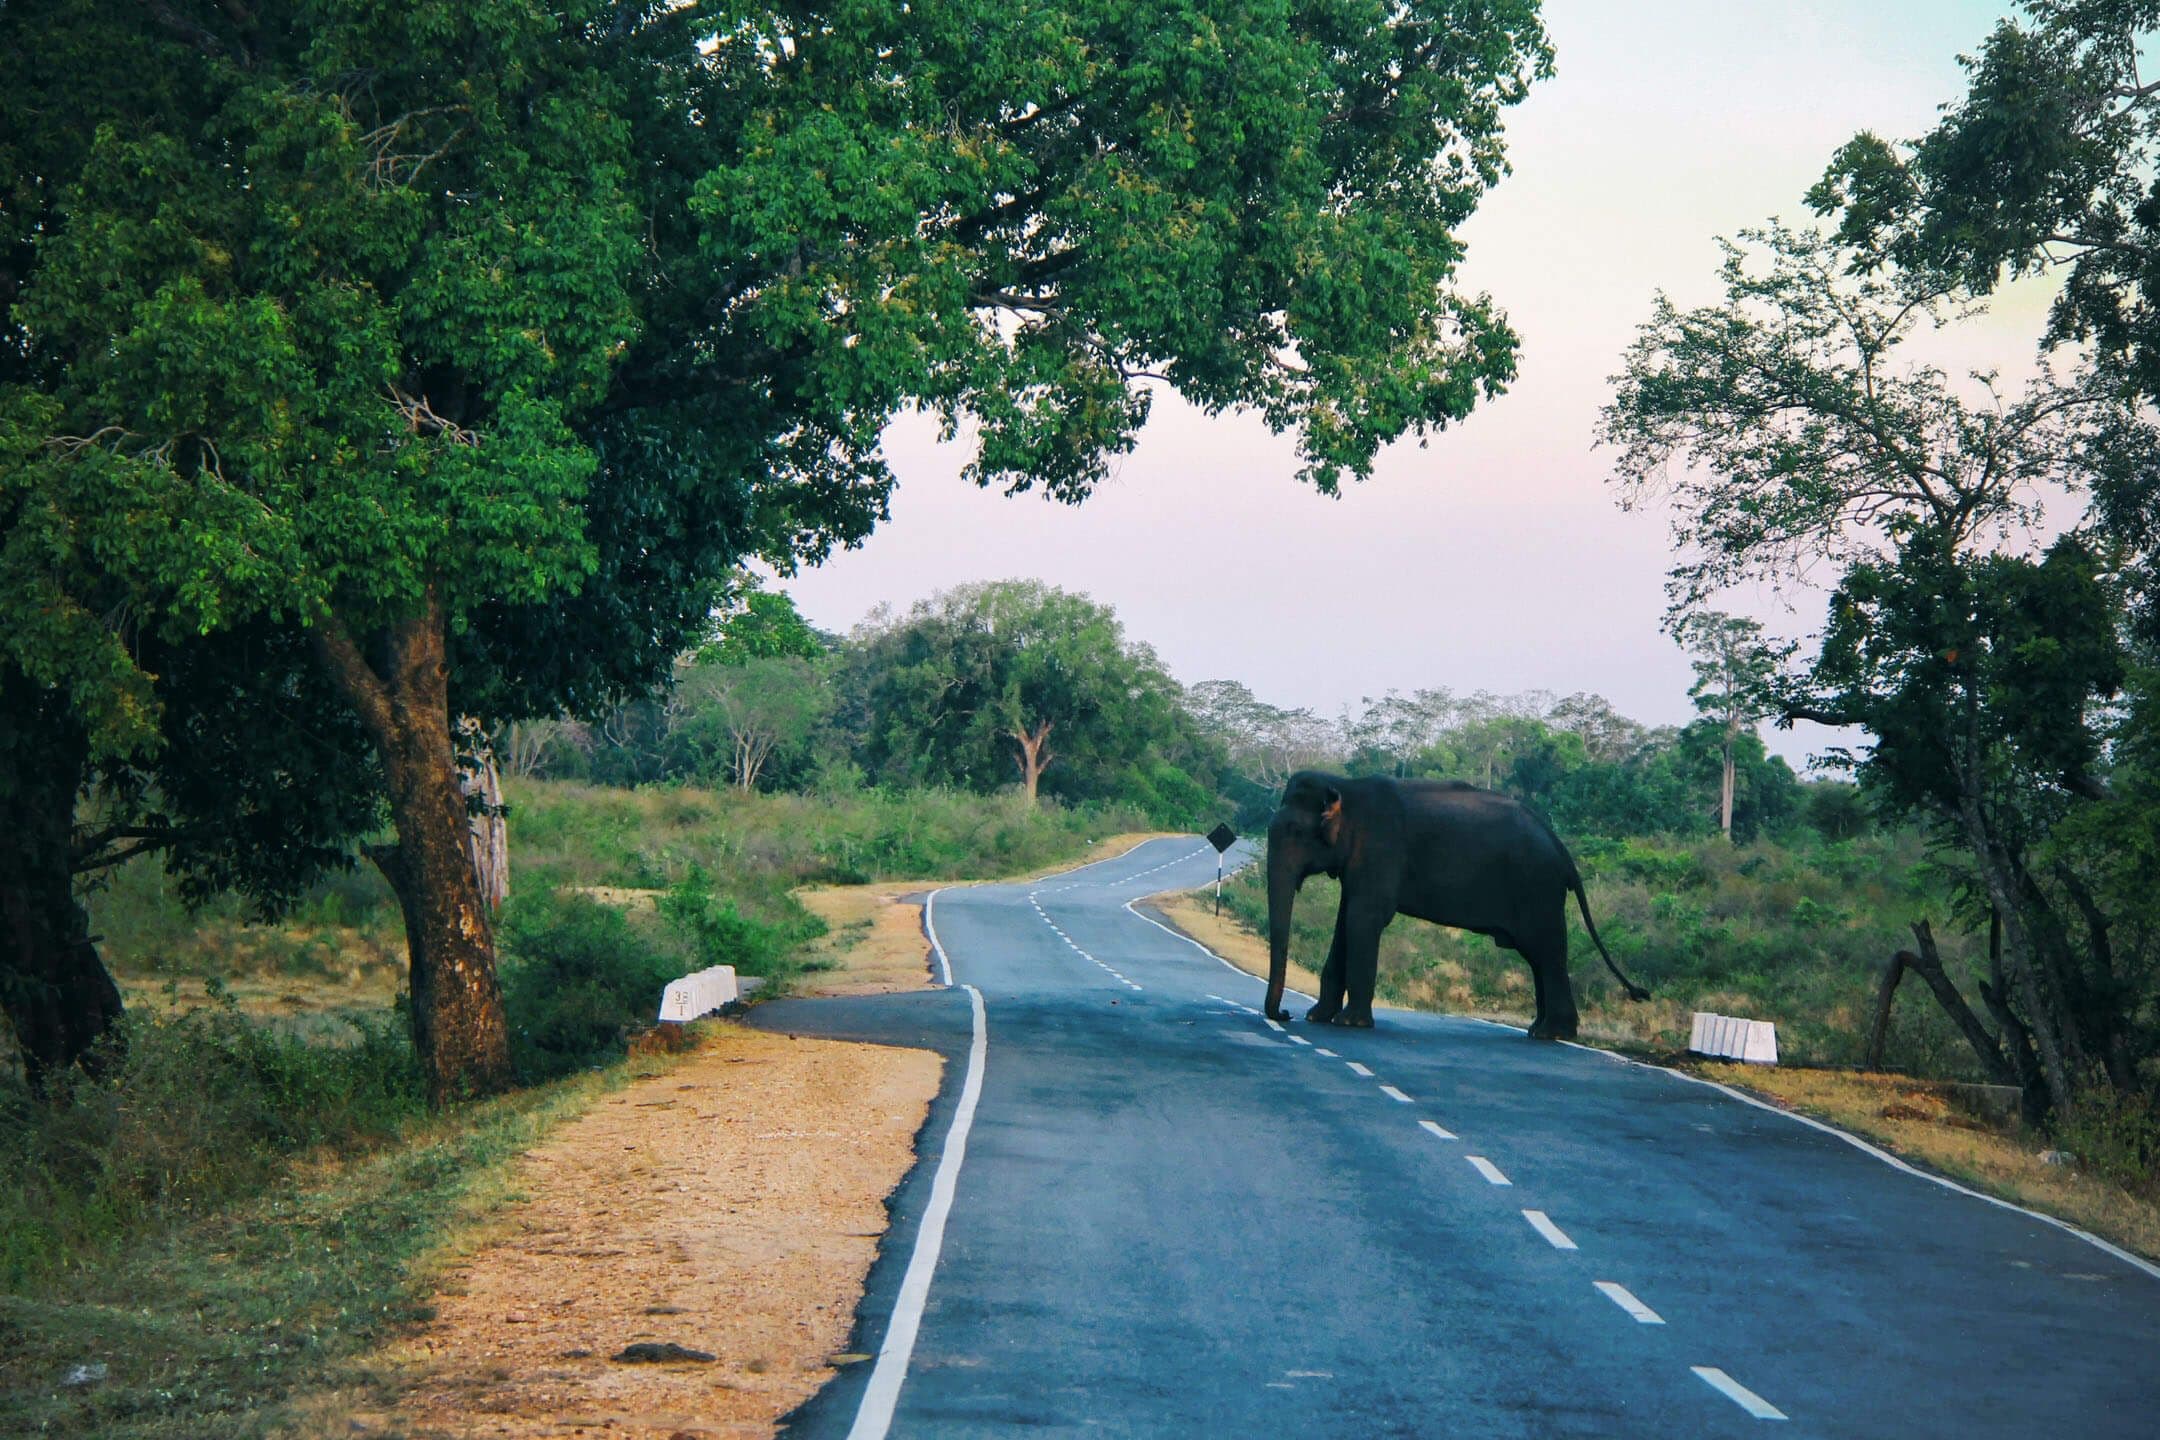 يعبر الفيل البري الطريق في مسار ركوب الدراجات في ريف يالا في سريلانكا